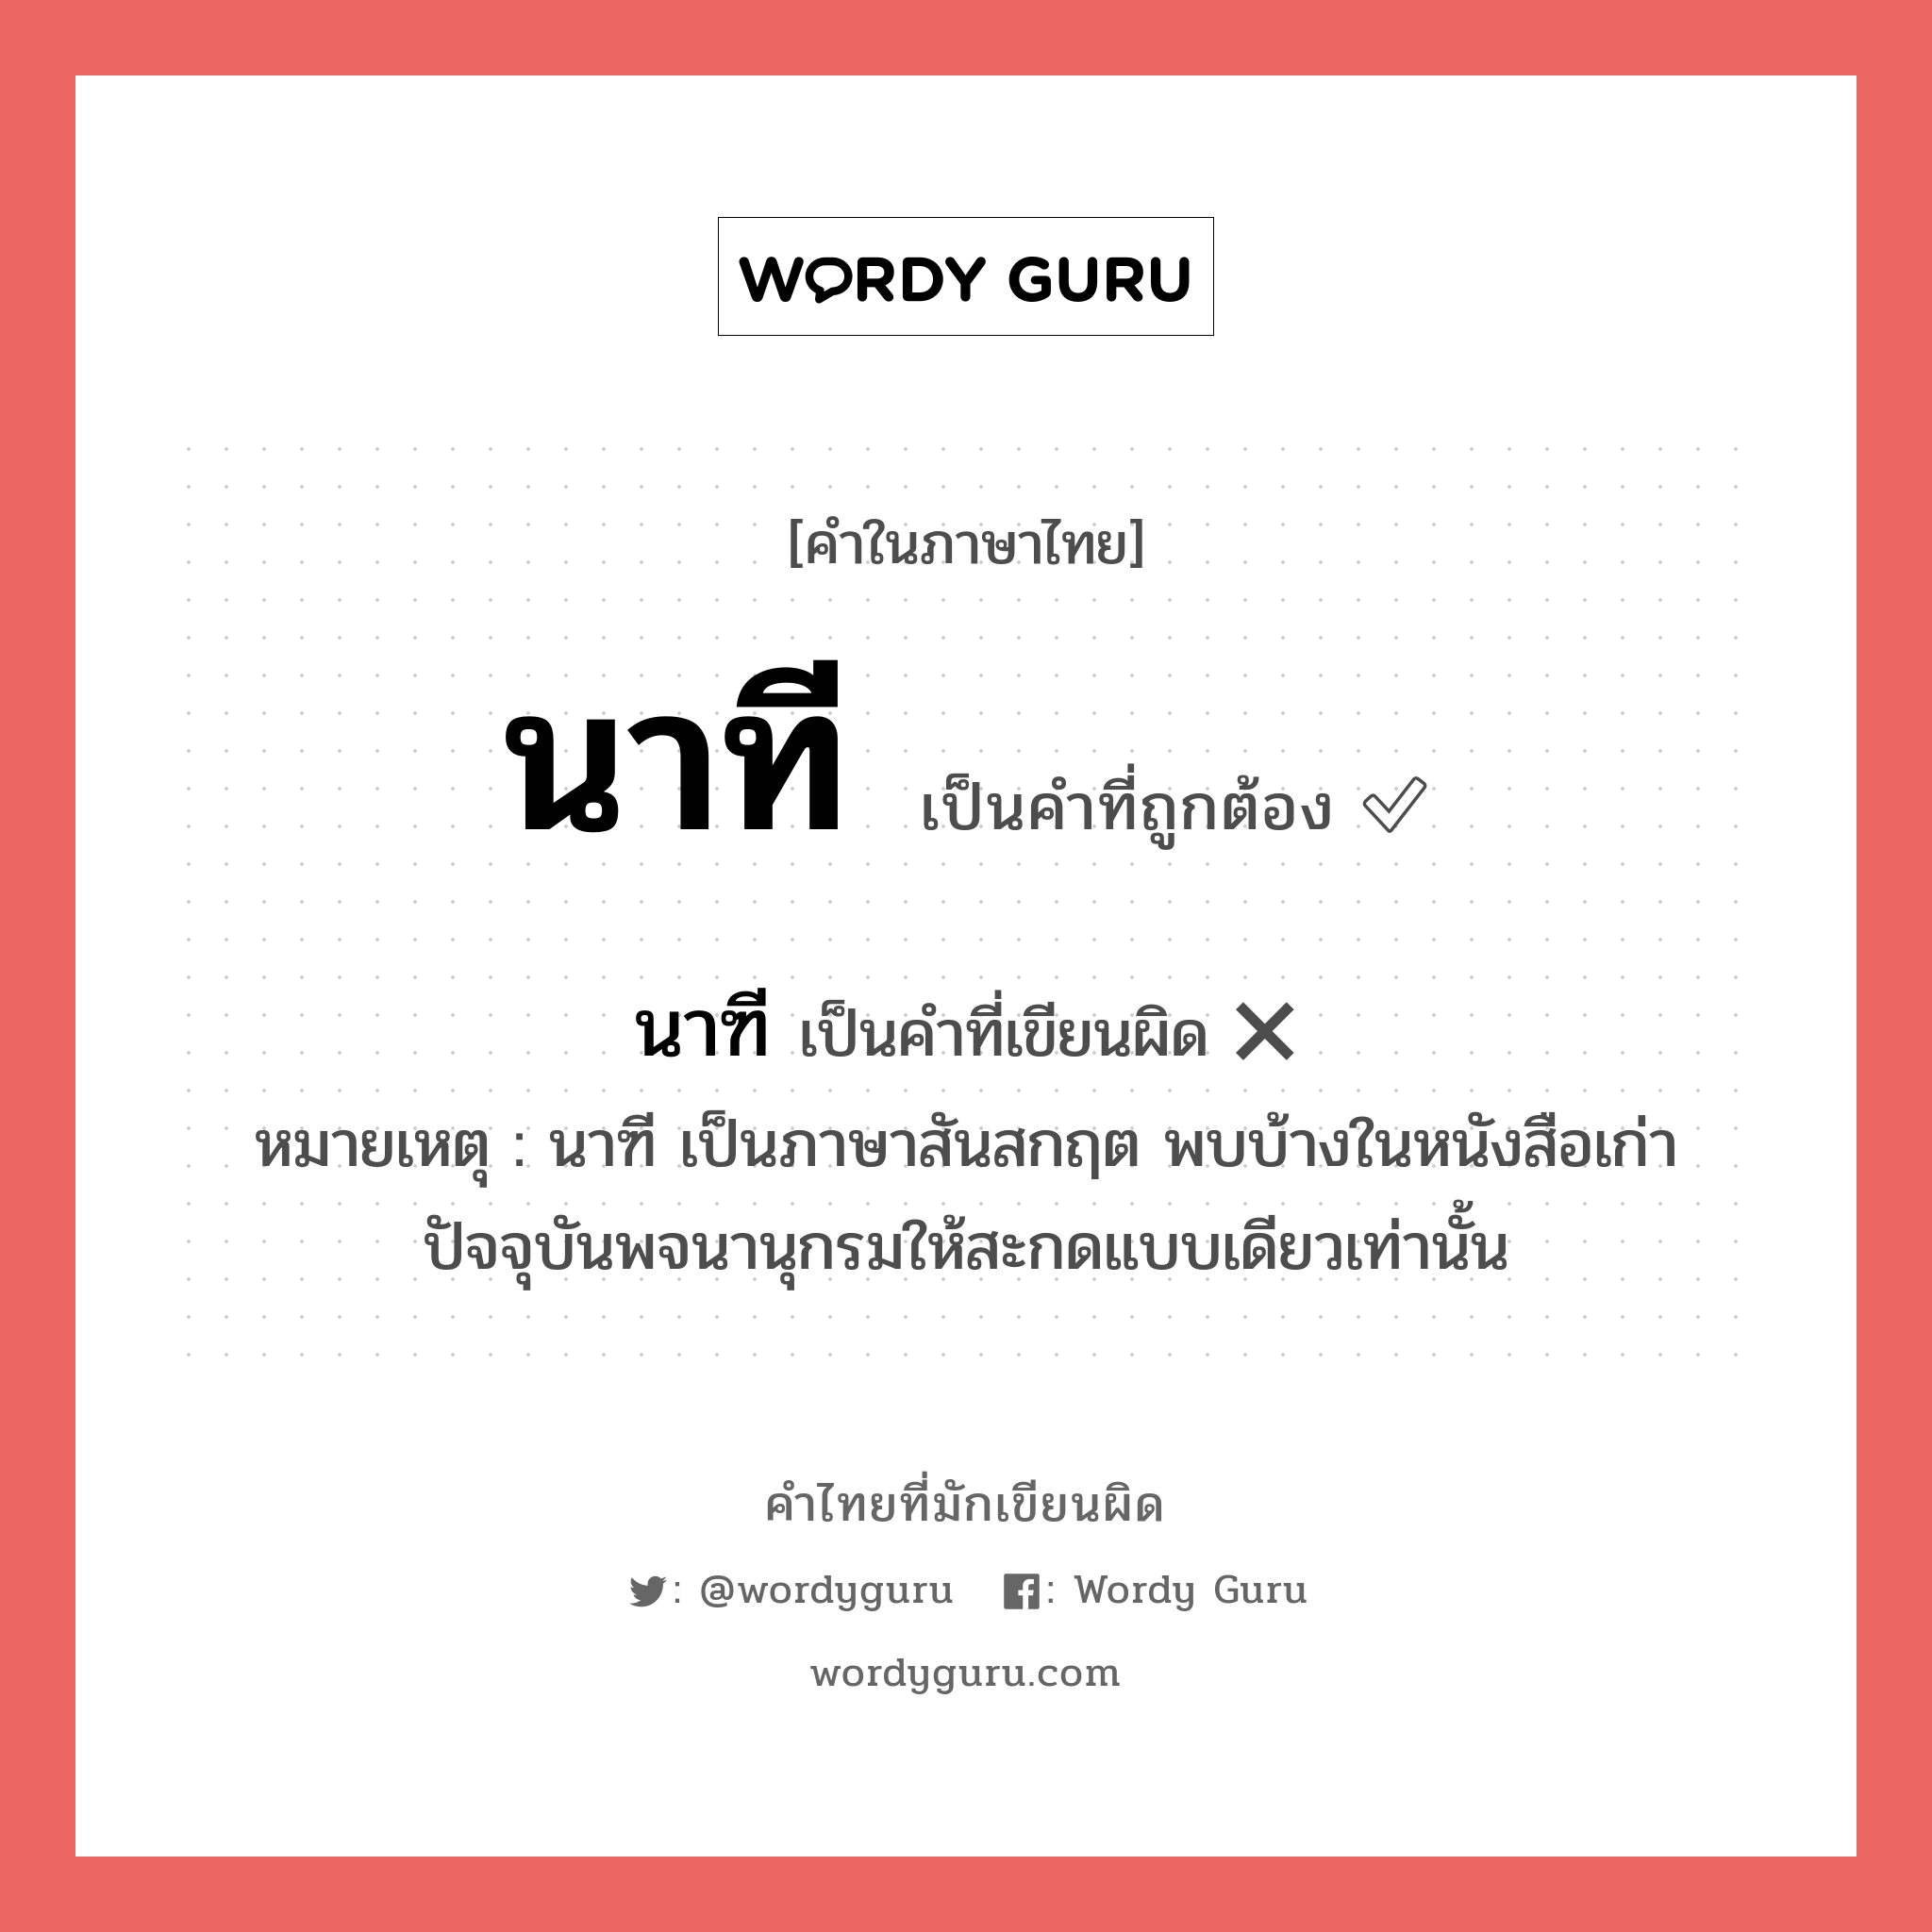 นาฑี หรือ นาที คำไหนเขียนถูก?, คำในภาษาไทยที่มักเขียนผิด นาฑี คำที่ผิด ❌ นาที หมายเหตุ นาฑี เป็นภาษาสันสกฤต พบบ้างในหนังสือเก่า ปัจจุบันพจนานุกรมให้สะกดแบบเดียวเท่านั้น